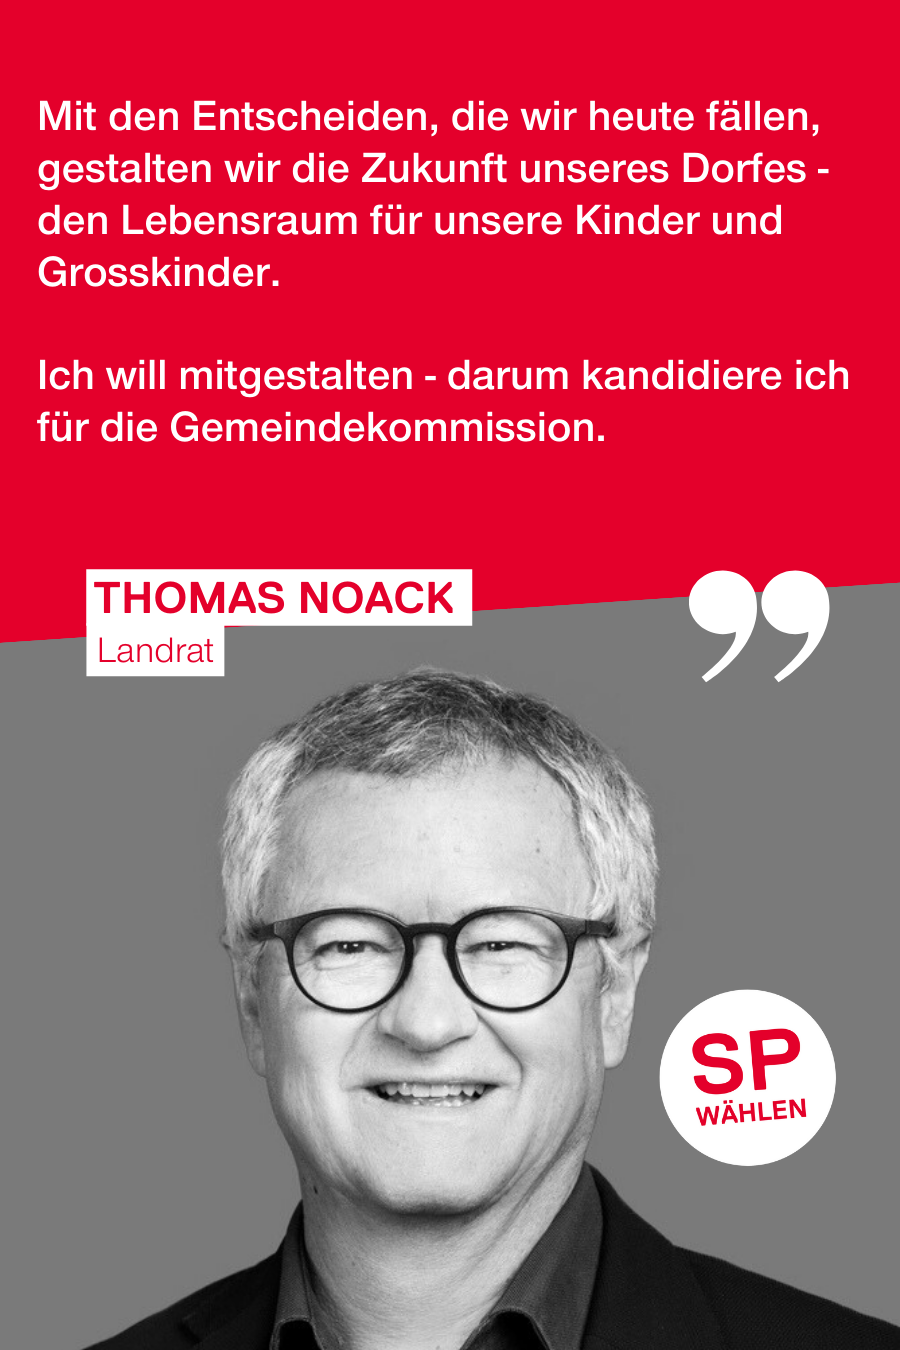 Thomas Noack